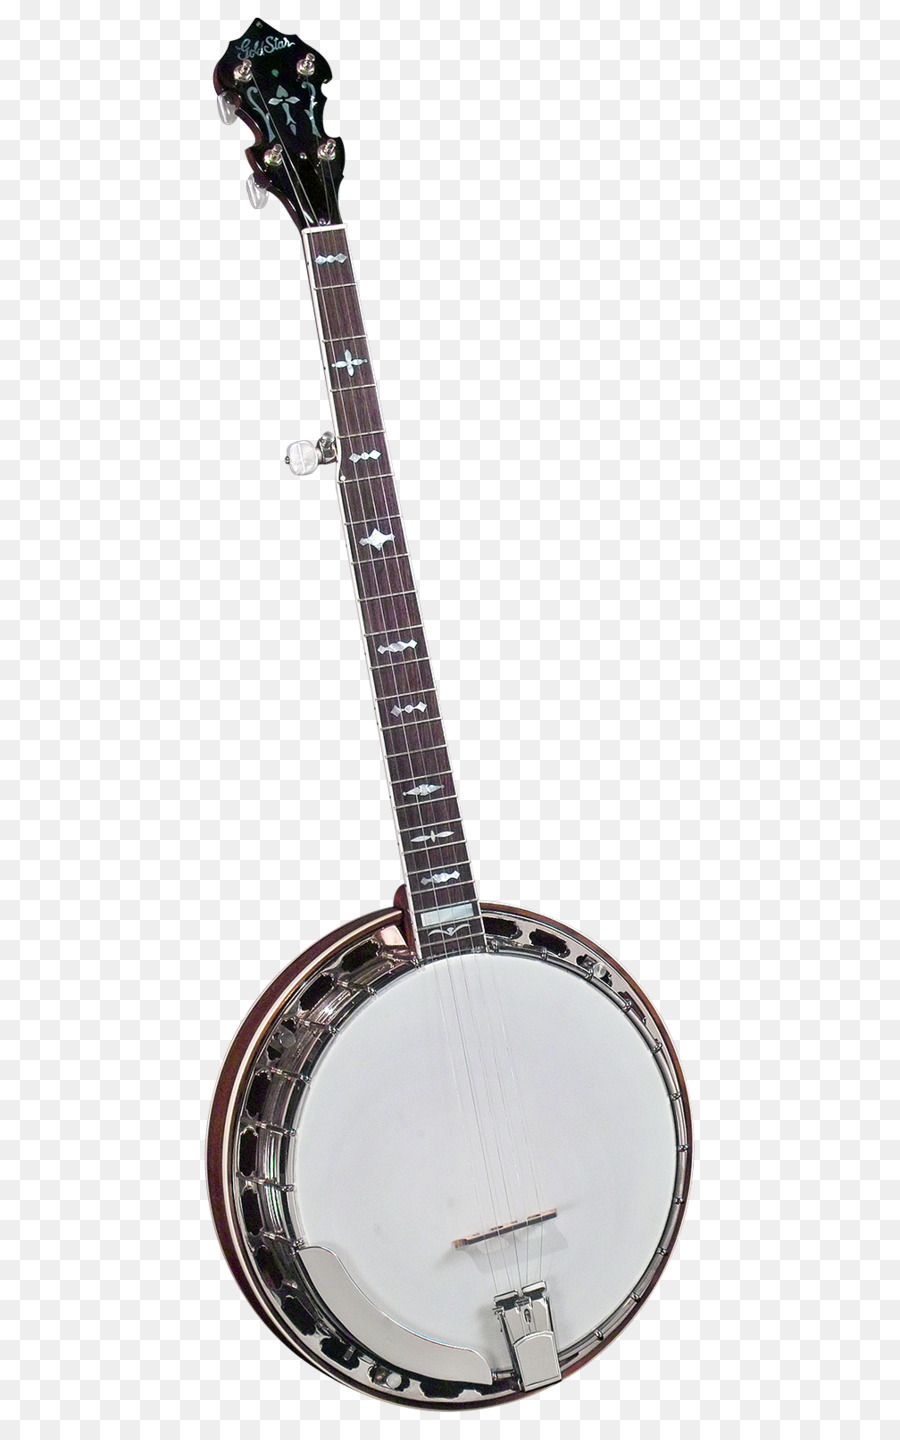 5 String Banjo String Instruments Mandolin - guitar png download - 1008*1600 - Free Transparent Banjo png Download.